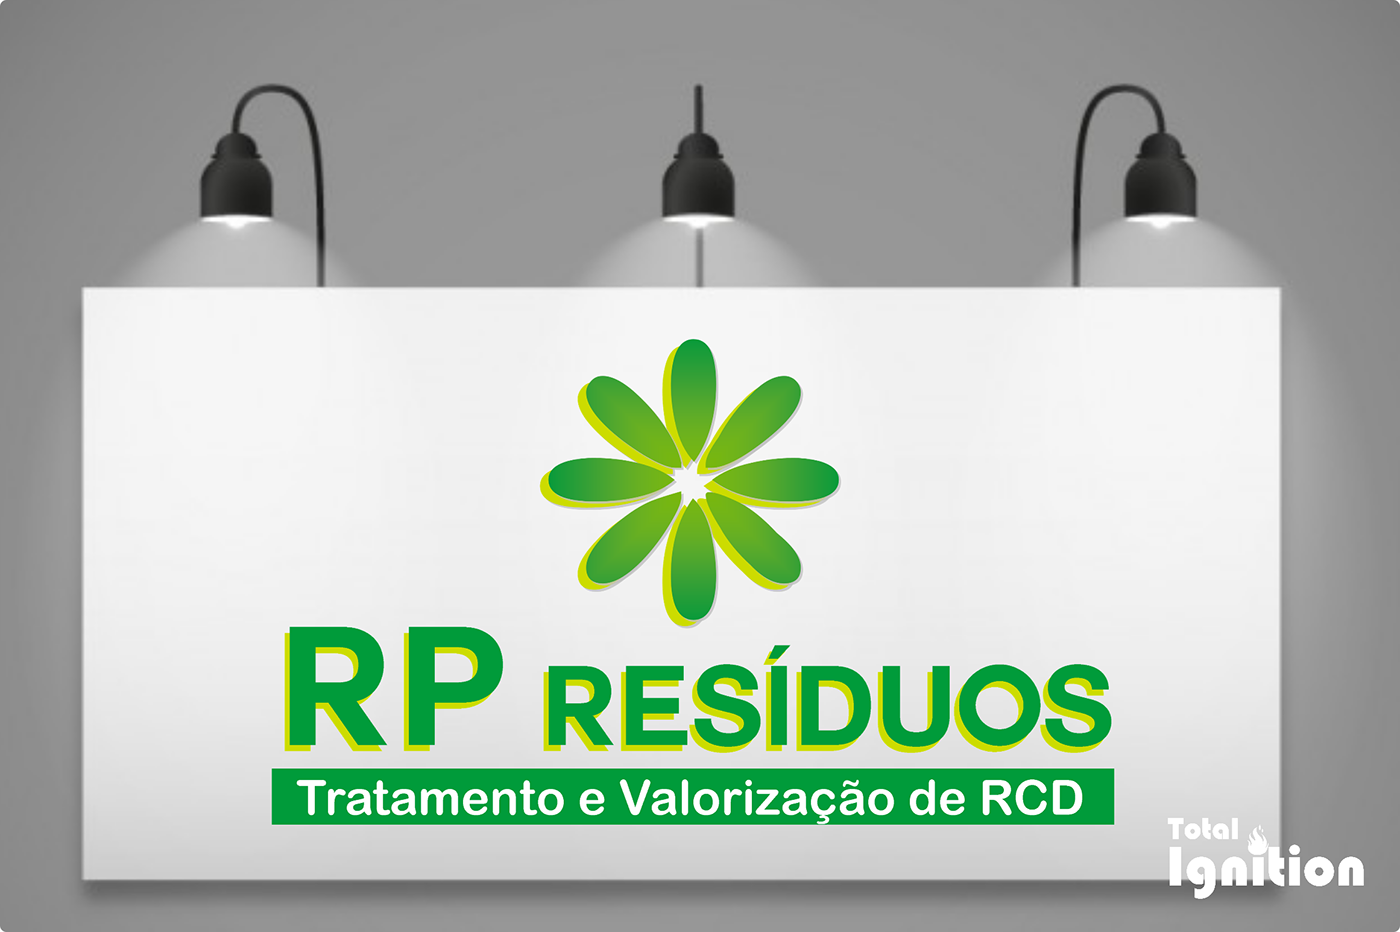 Logo Design Website Design flyers Business Cards Algarve Portugal lagoa Portimão branding  green recycle